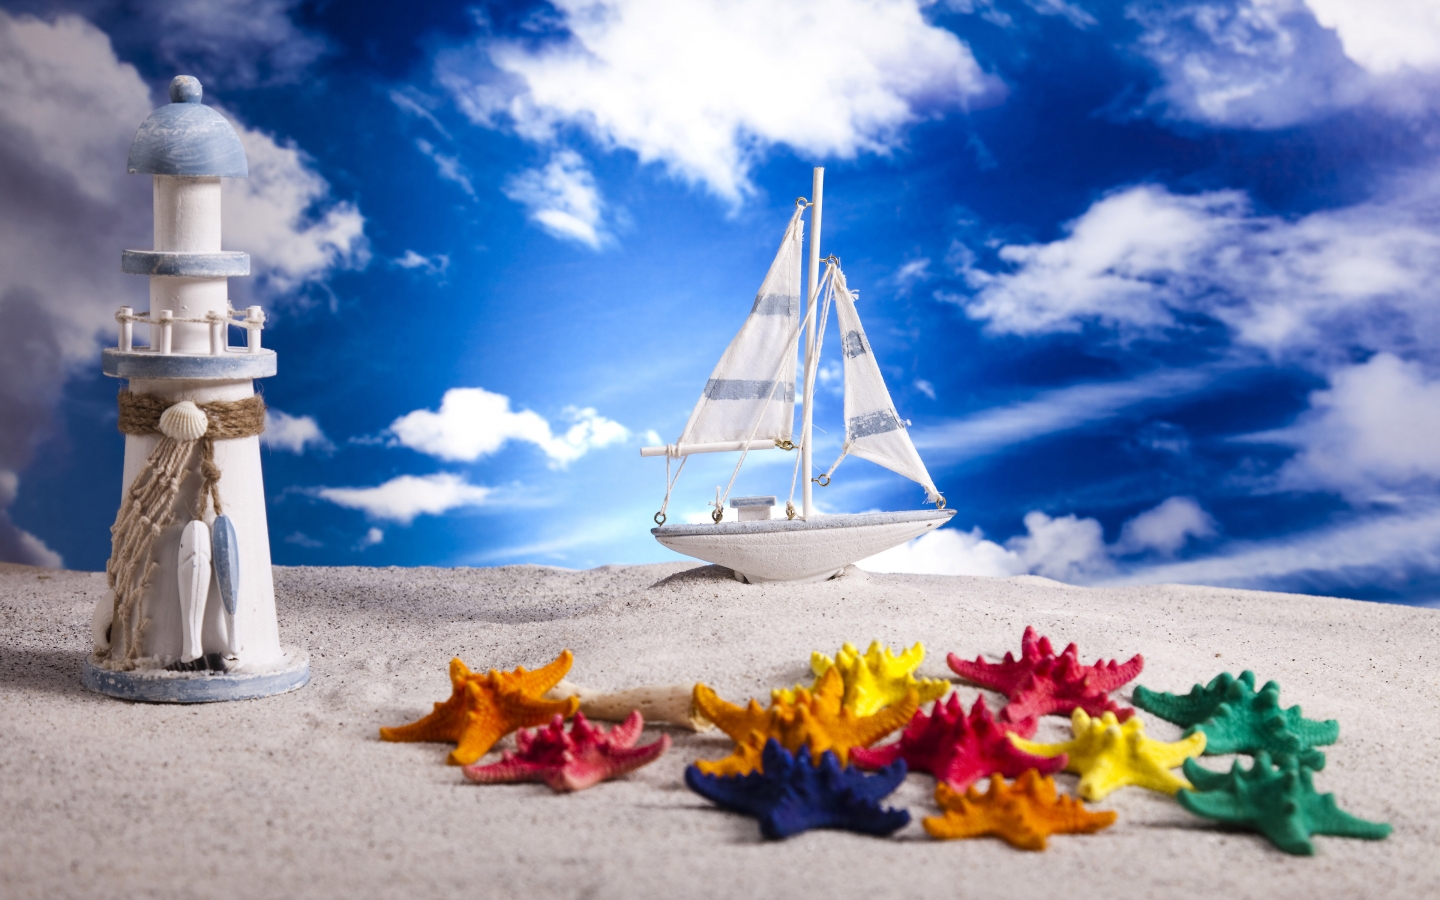 Summer Beach Miniature for 1440 x 900 widescreen resolution